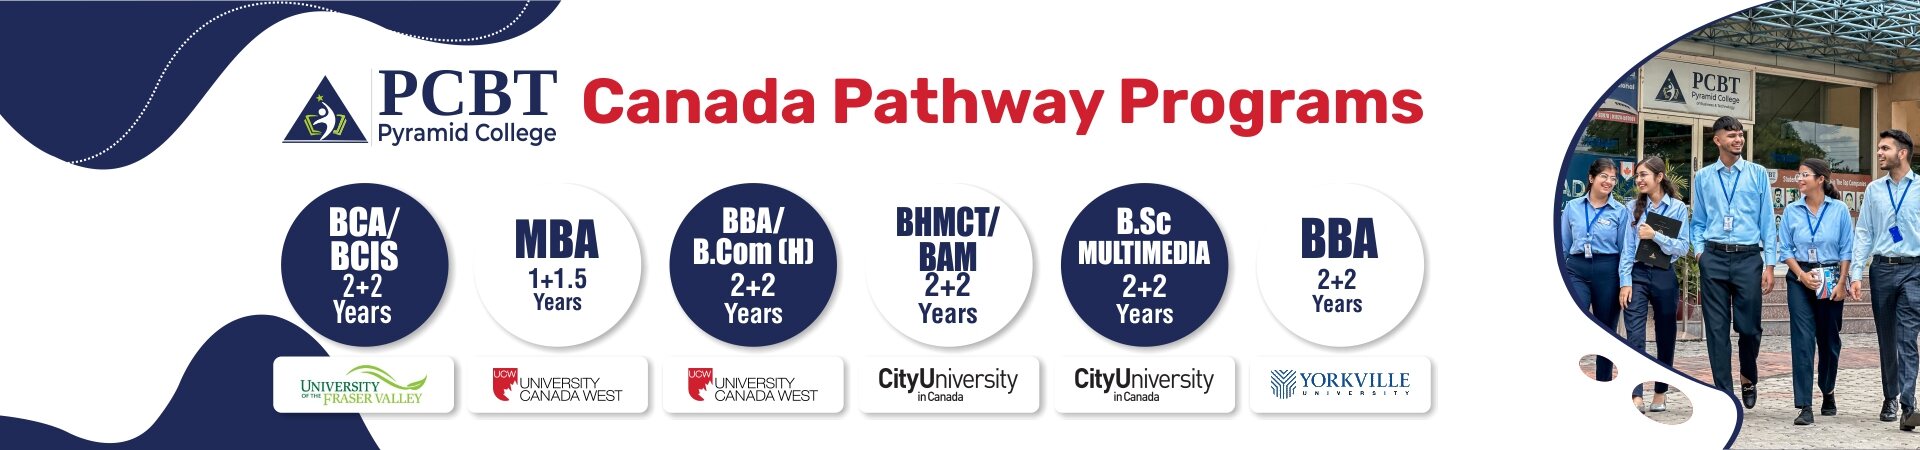 Canada Pathway Programs